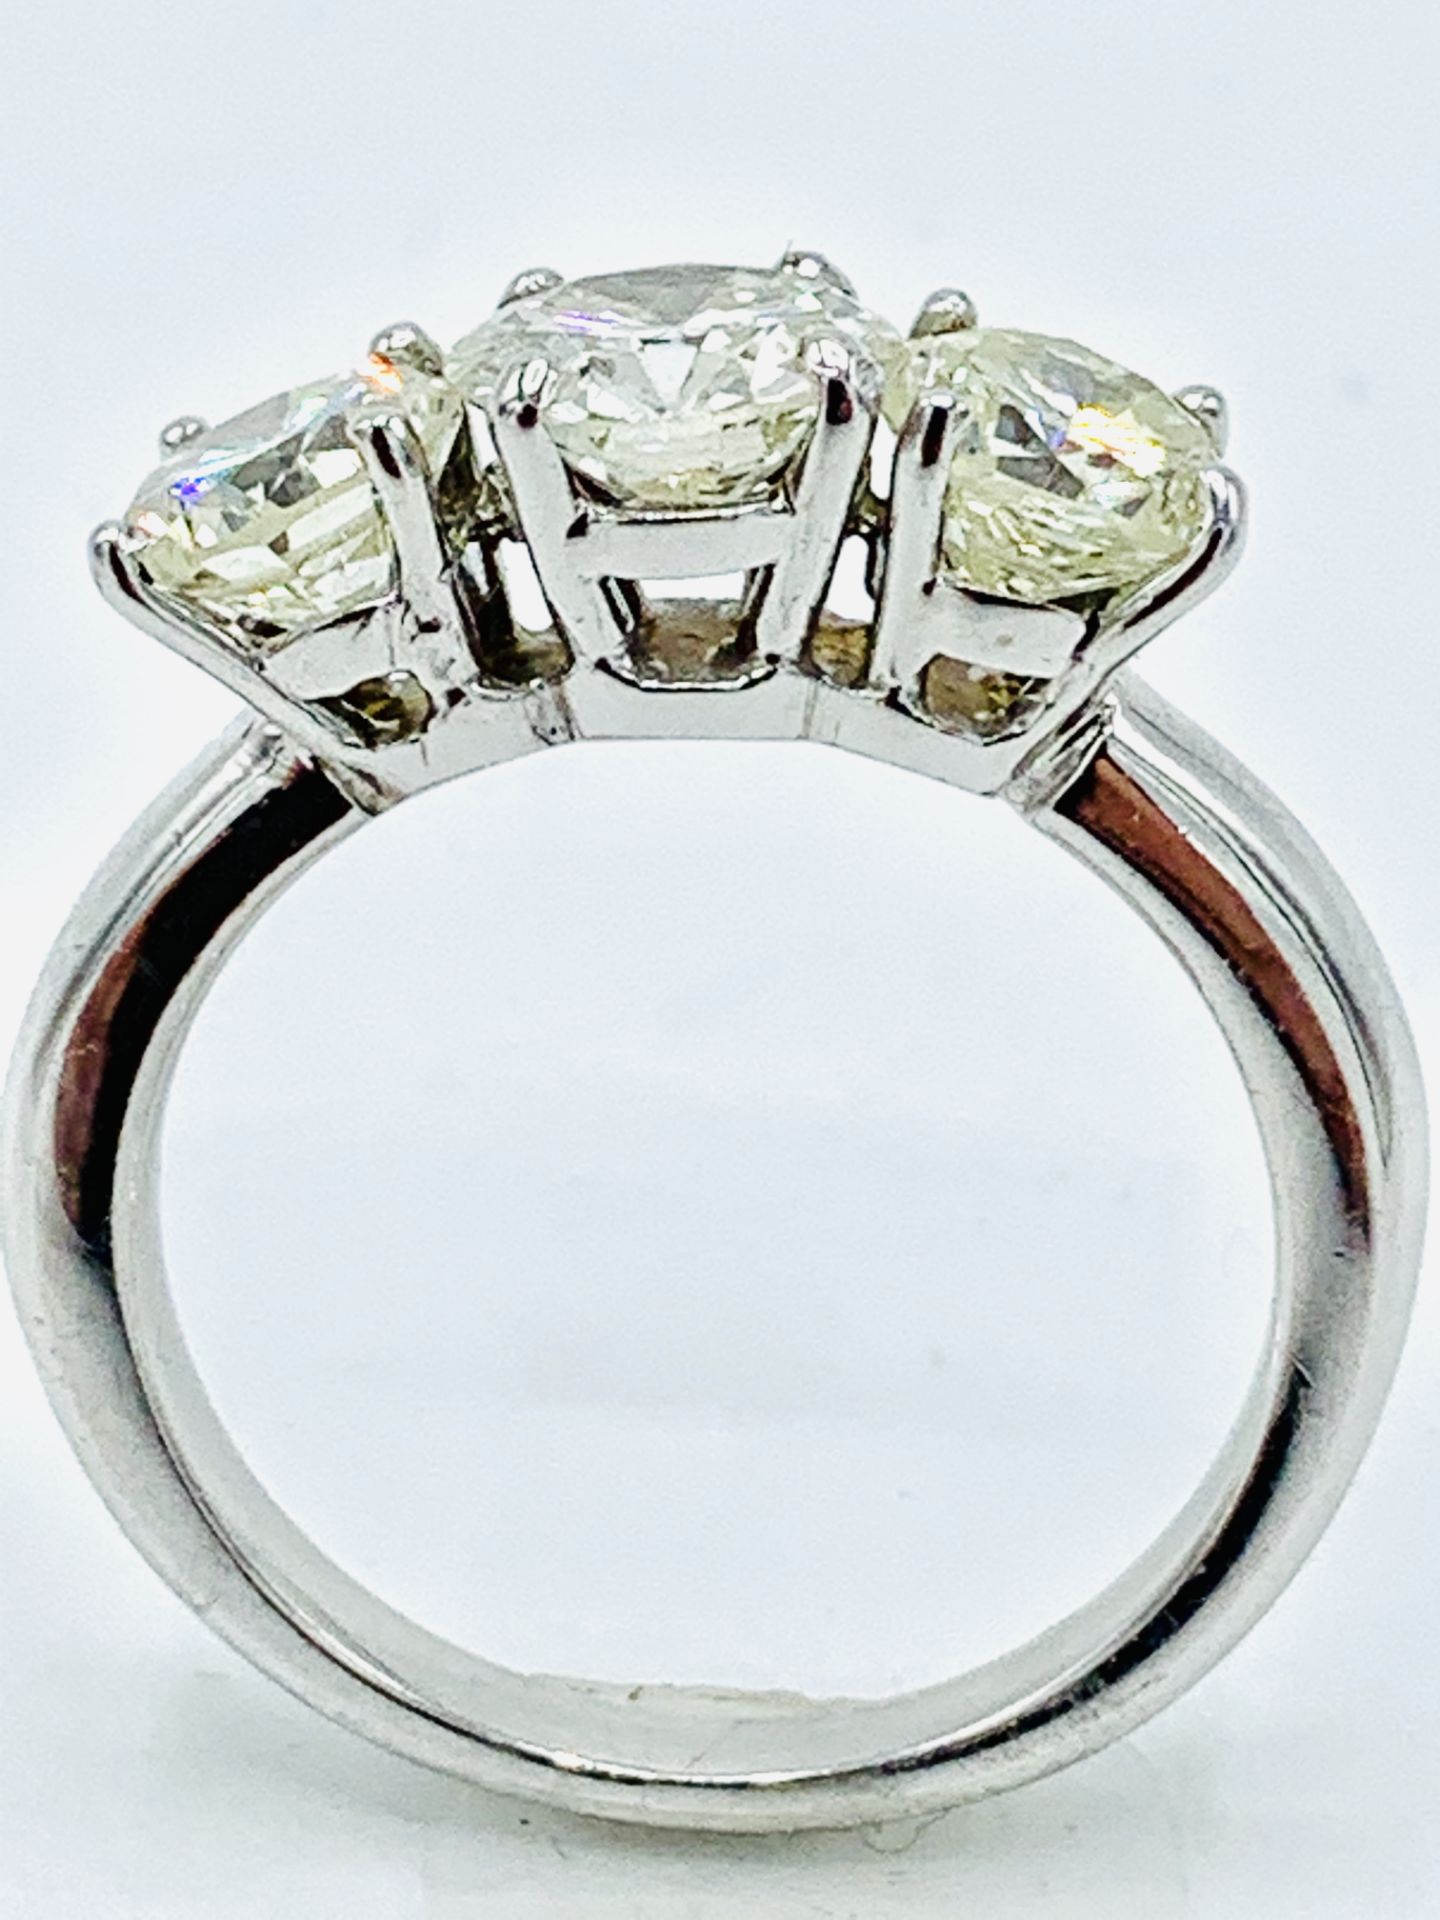 18ct white gold three diamond ring. - Image 5 of 7